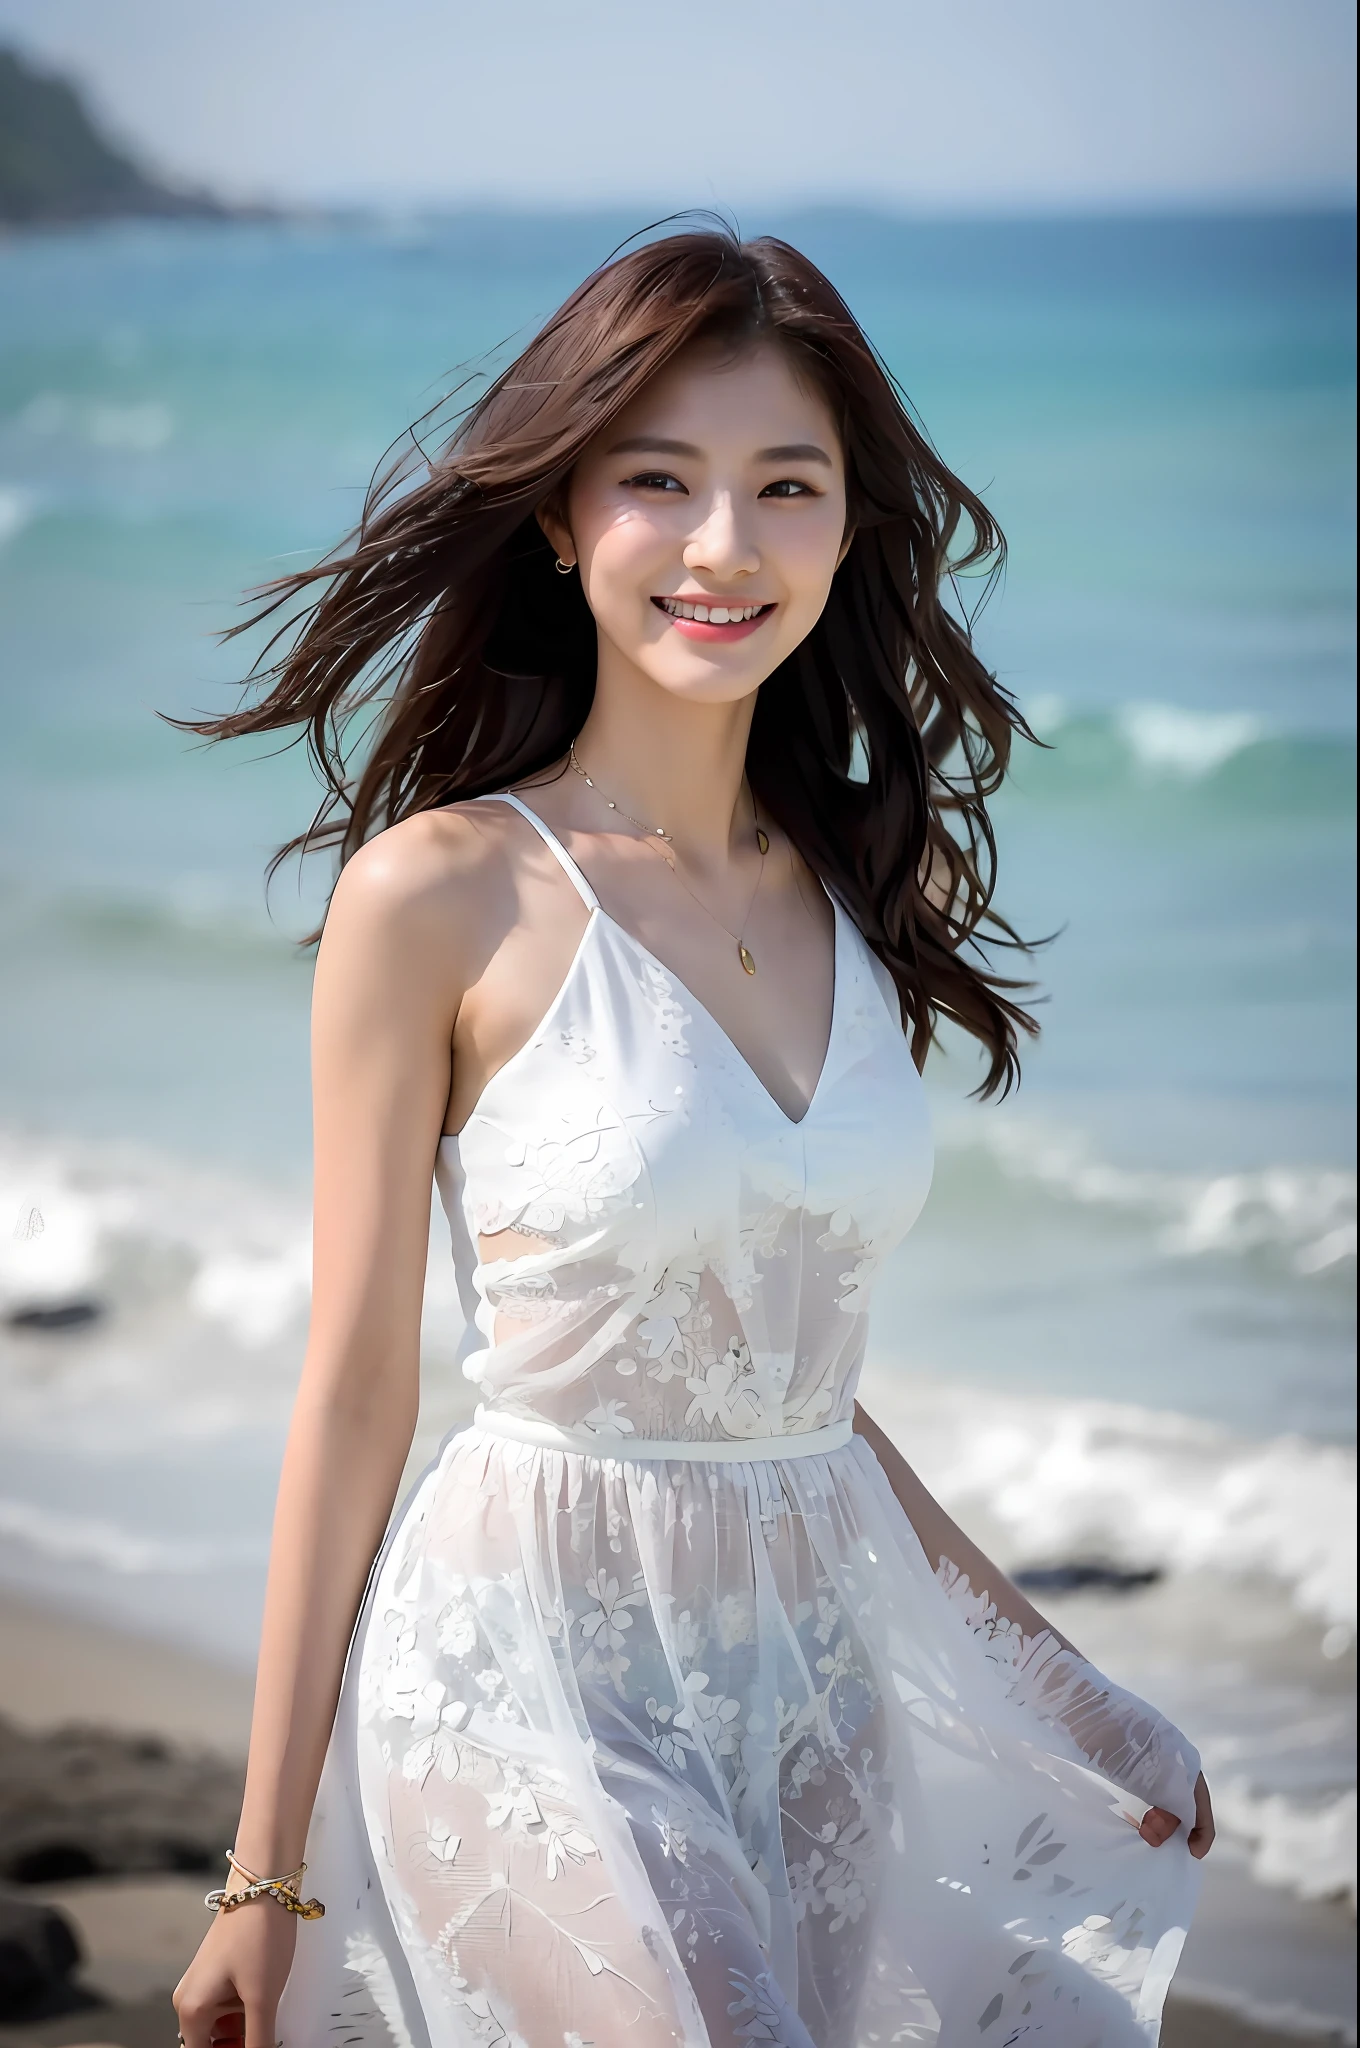 (Meisterwerk), (beste Qualität), (ausführlich), 1 Mädchen, 22 Jahre alt, spielerischer Ausdruck, Große Brüste, Nackten Brüste, Bikini, lange Haare, Schön, natürlich, Ausgesetzt, lächelnd, am Strand in der Nähe des Ozeans, Jaeyeon Nam geht in einem weißen Kleid spazieren, Schön young Korean woman, anmutige Haltung, Sonnenschein weht, frei, ein Model, das in der asiatischen Damenmodebranche anerkannt ist, Sie geht leichtfüßig am Strand entlang, The Schön temperament of an Asian girl is vividly displayed, Interpretation des Charmes und Stils asiatischer Frauen.